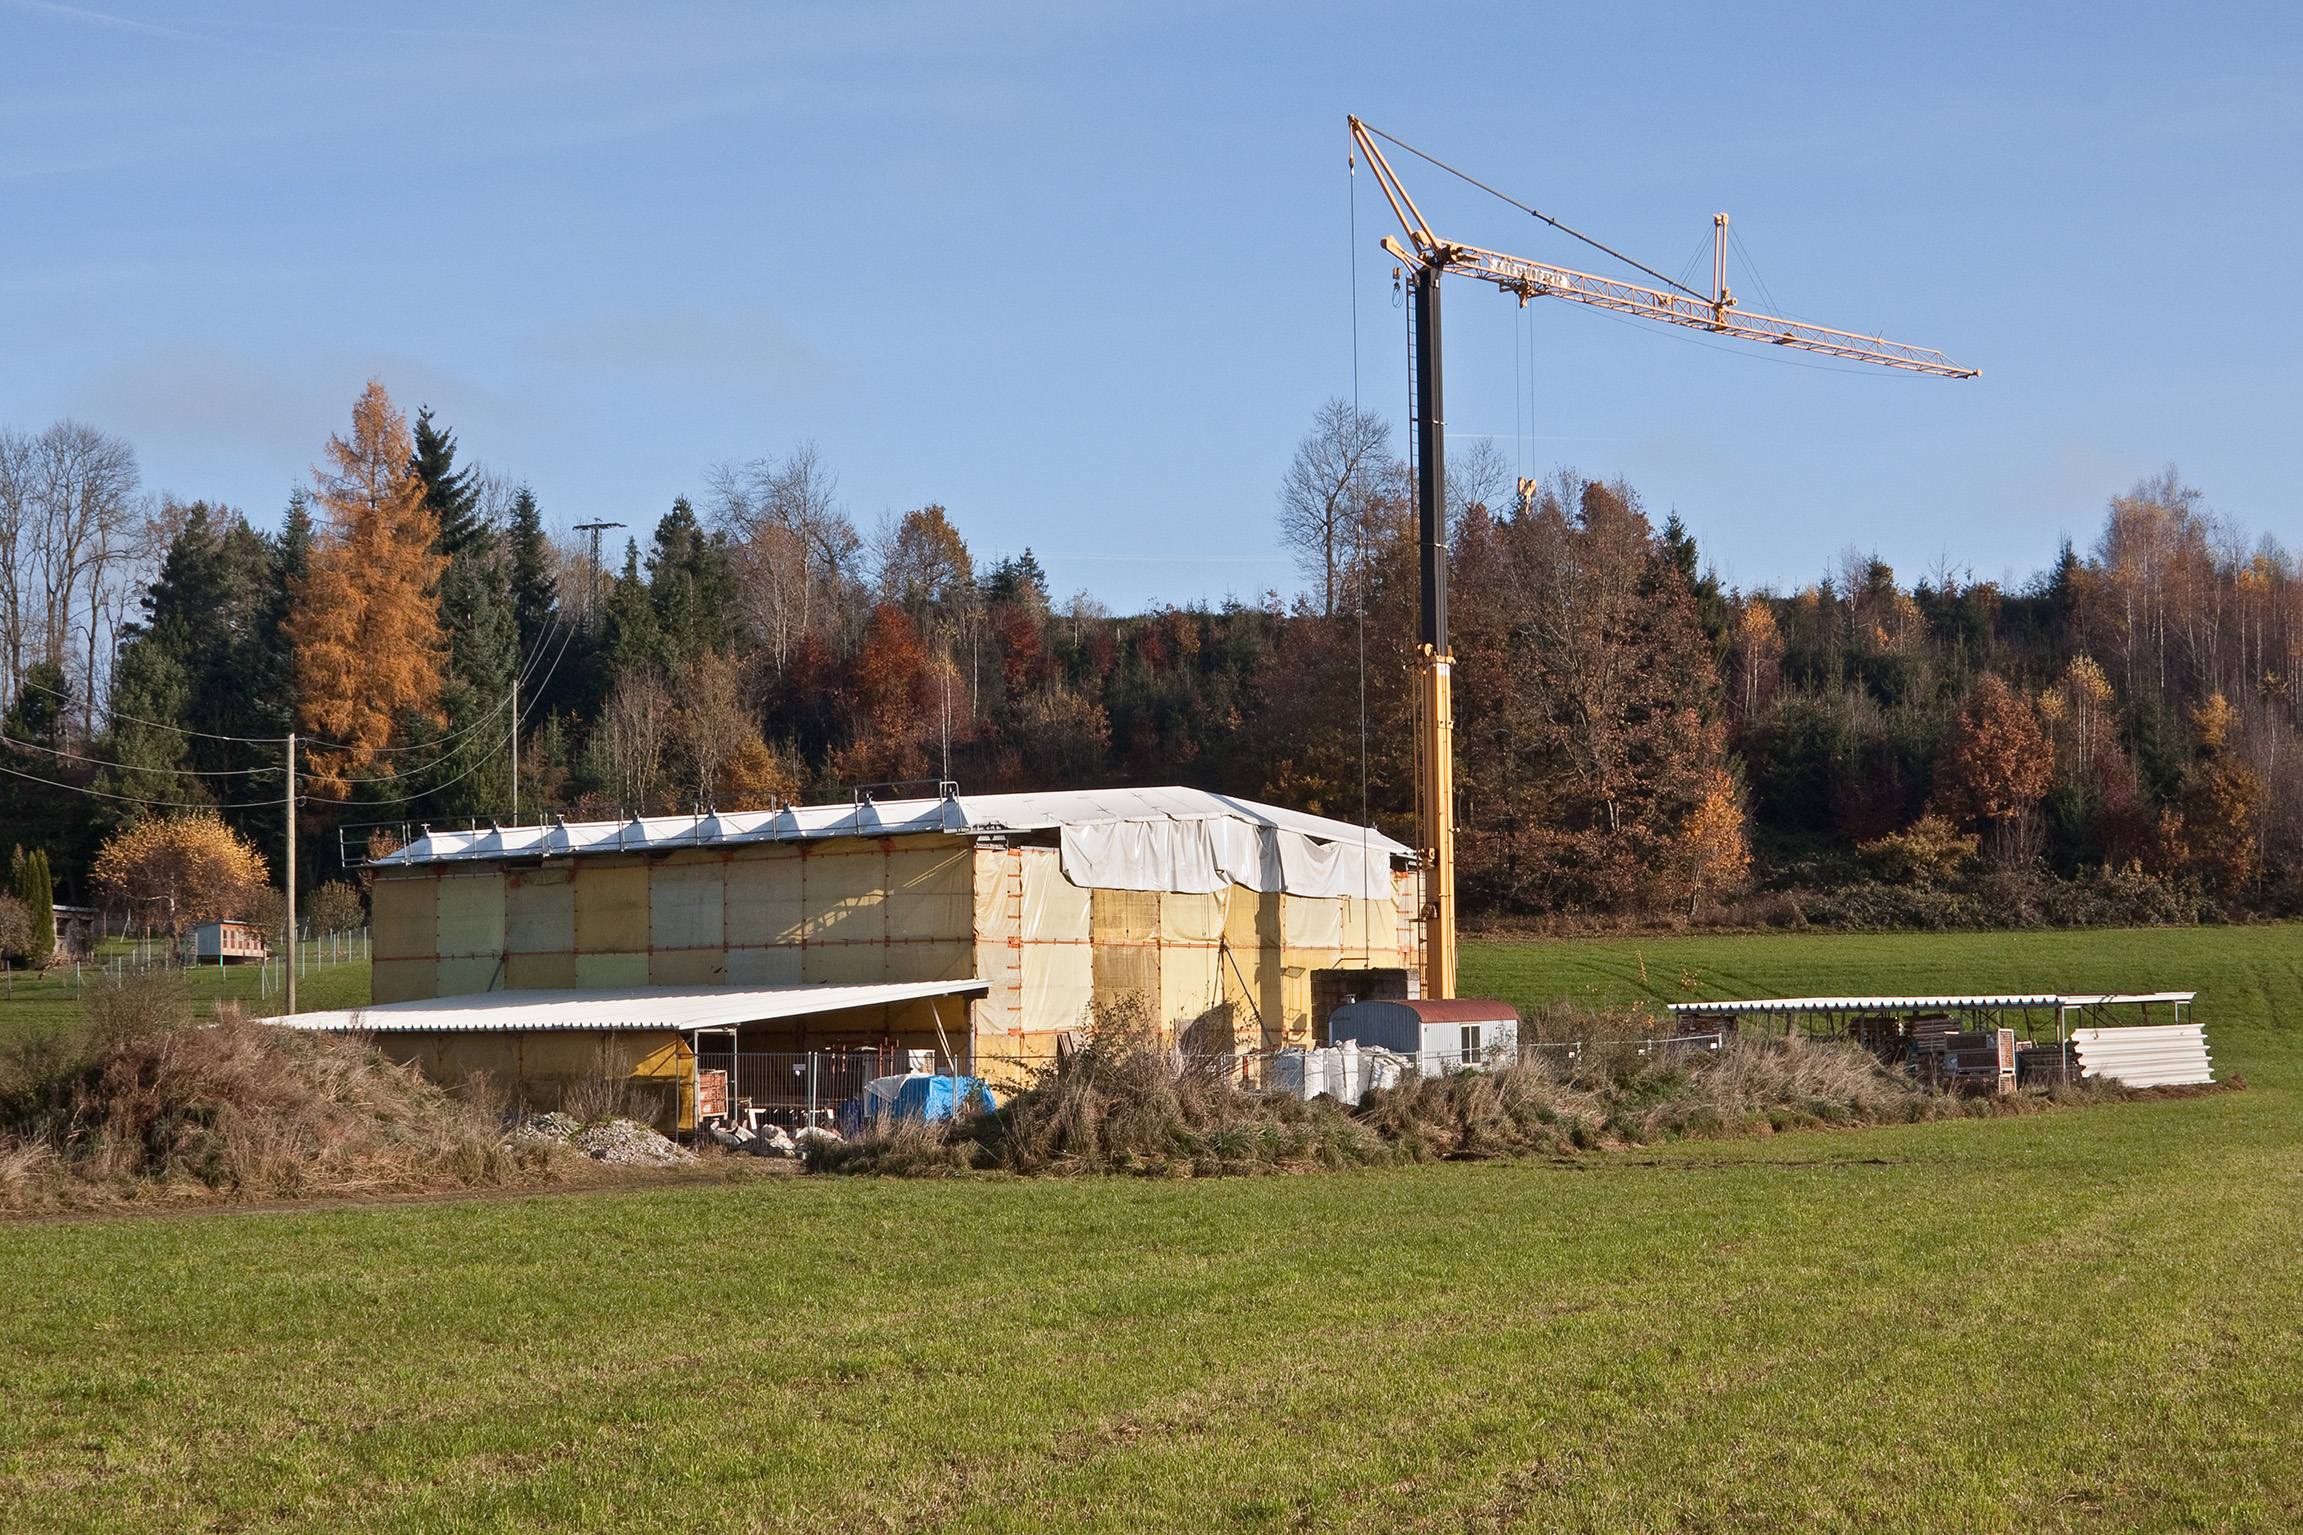 Typisch für die Region ist die Ständer-Bohlen- Bauweise und das flachgeneigte Dach mit ehemaliger Legschindeldeckung. Das Bauernhaus soll im Museum die Baugruppe Alpenvorland begründen.